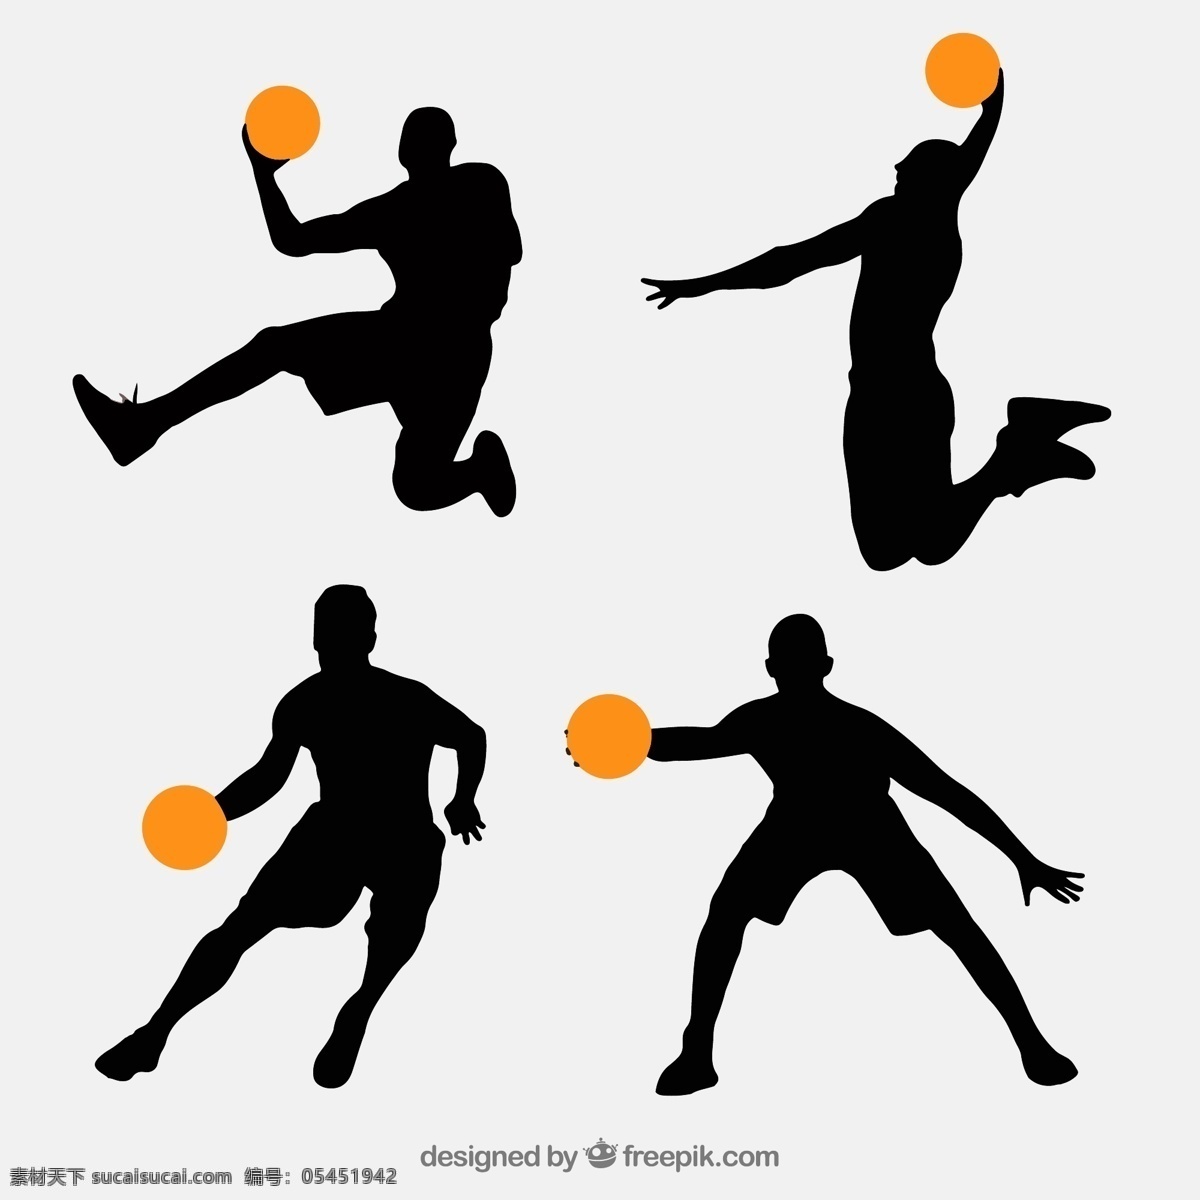 篮球人物剪影 创意篮球人物 剪影矢量素材 篮球 人物 剪影 男子 运动 矢量图 ai格式